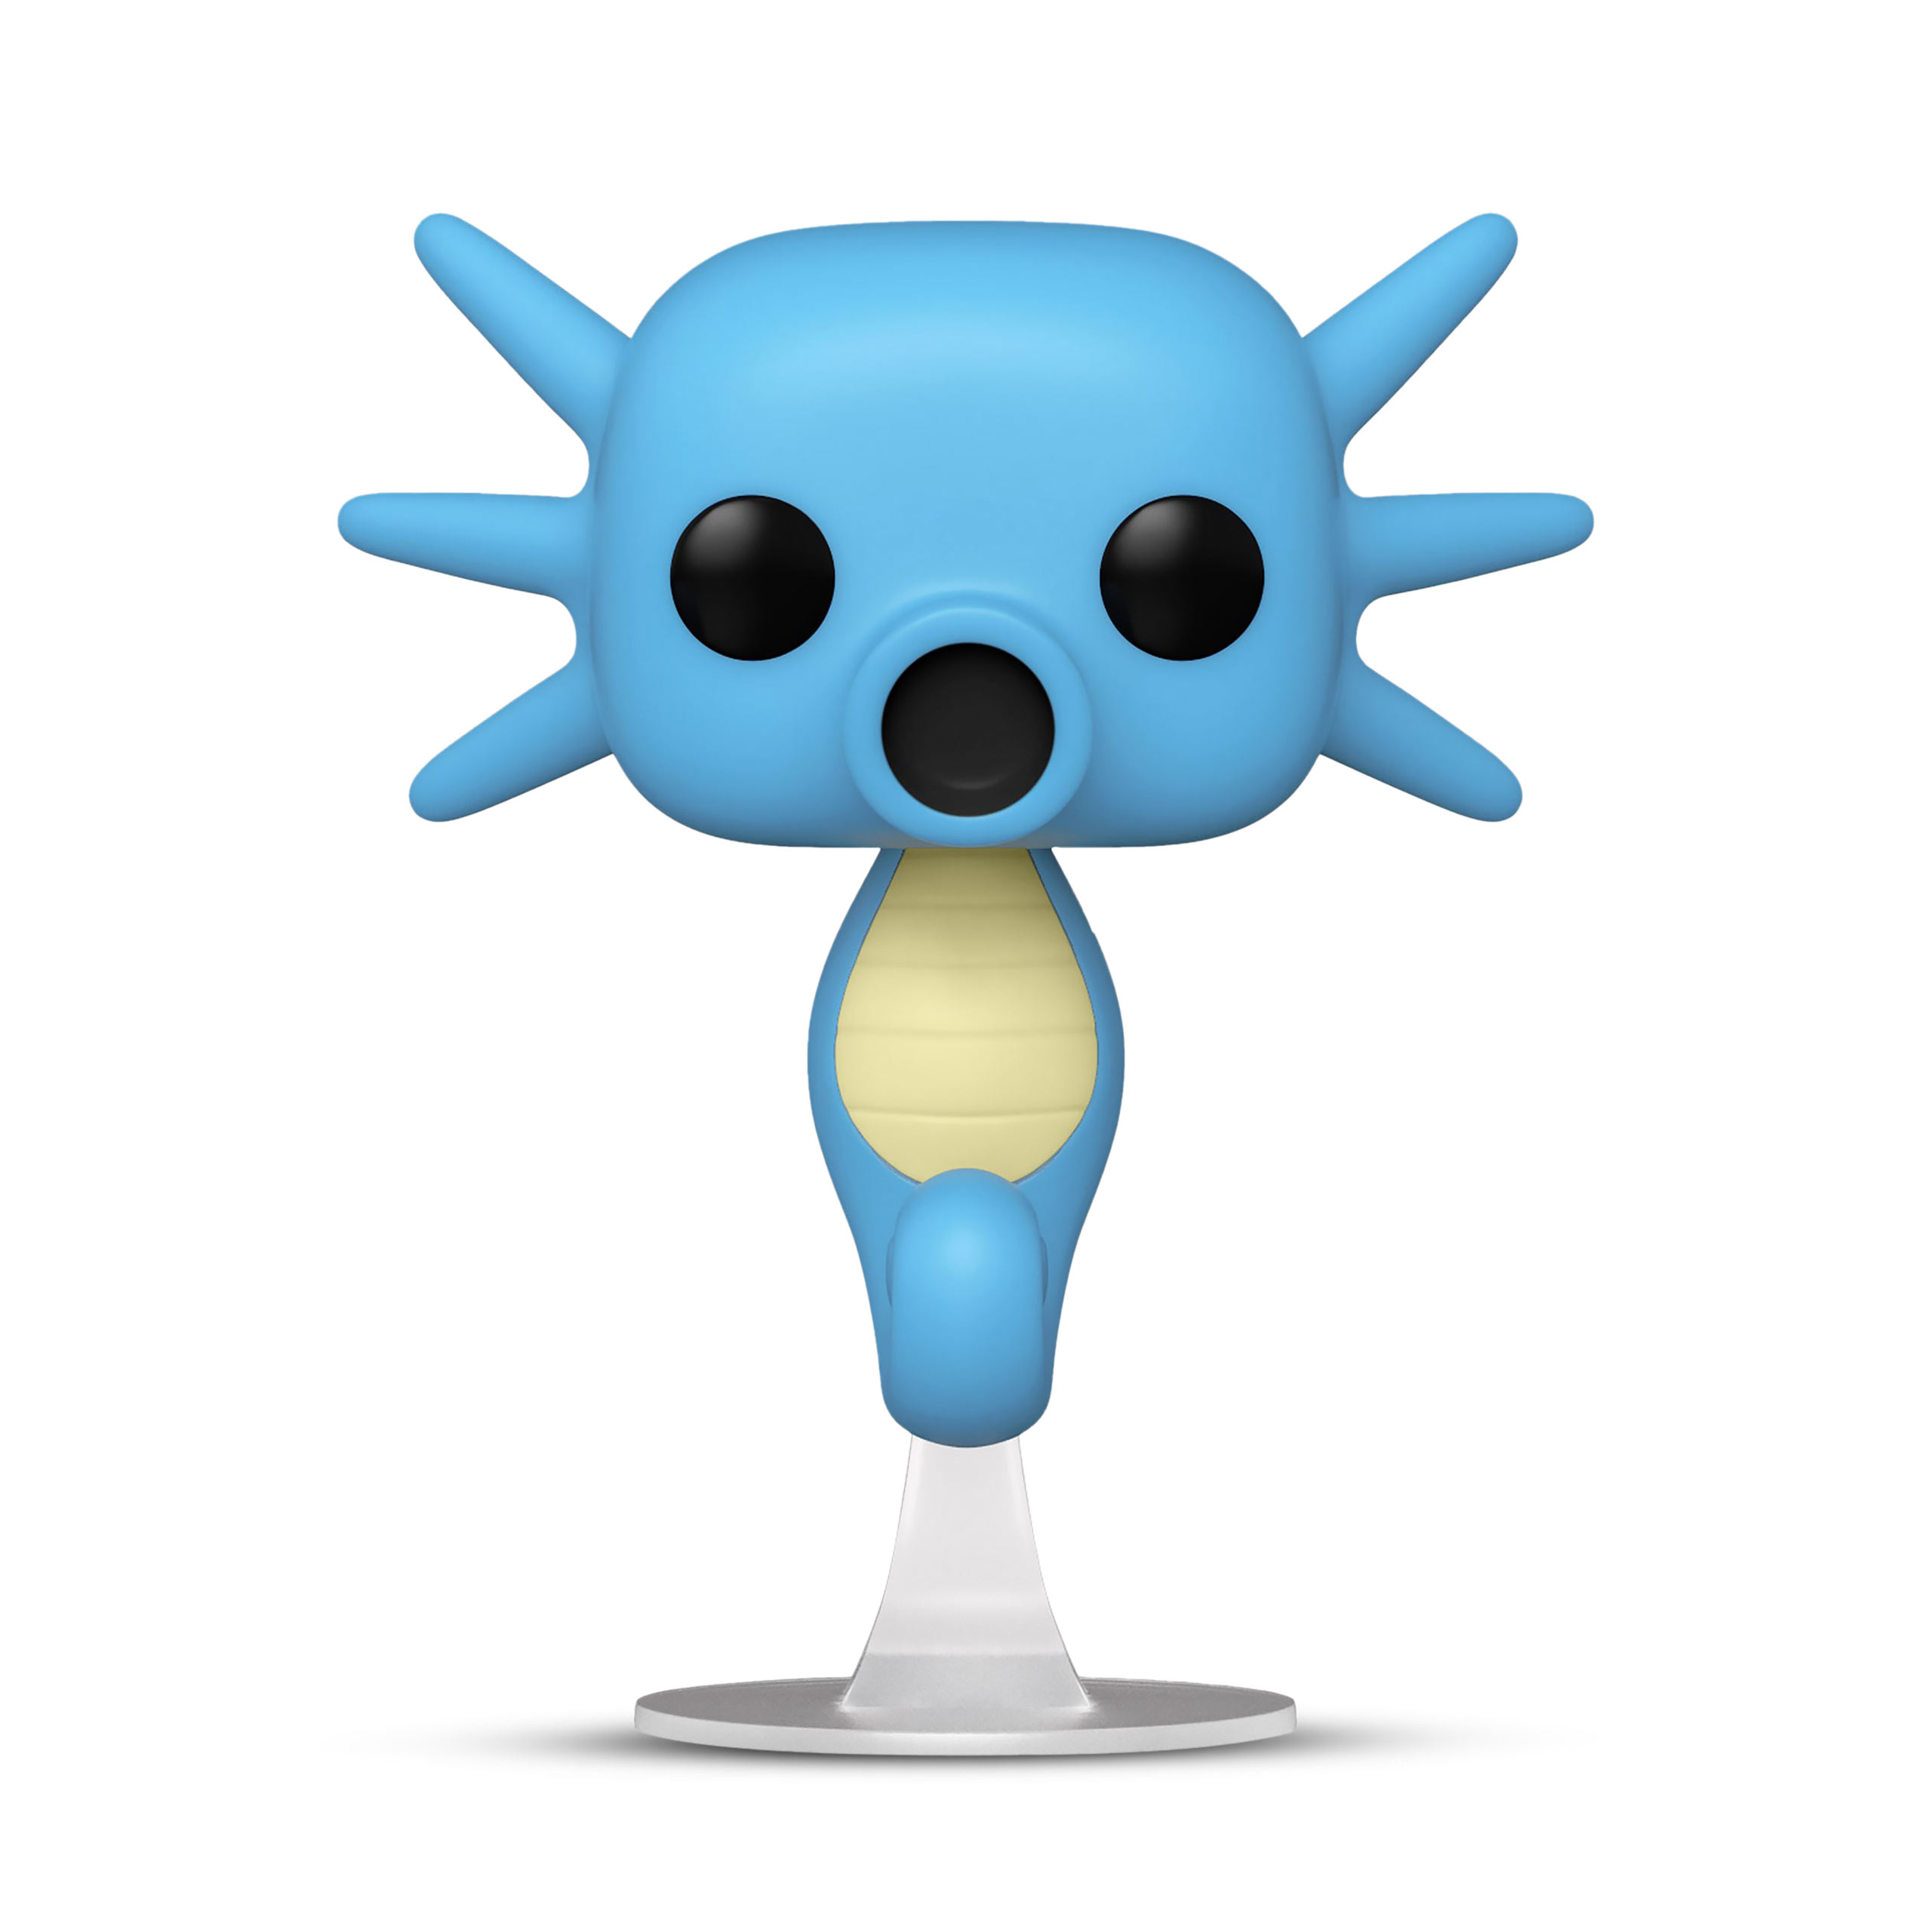 Pokemon - Hypotrempe Figurine Funko Pop